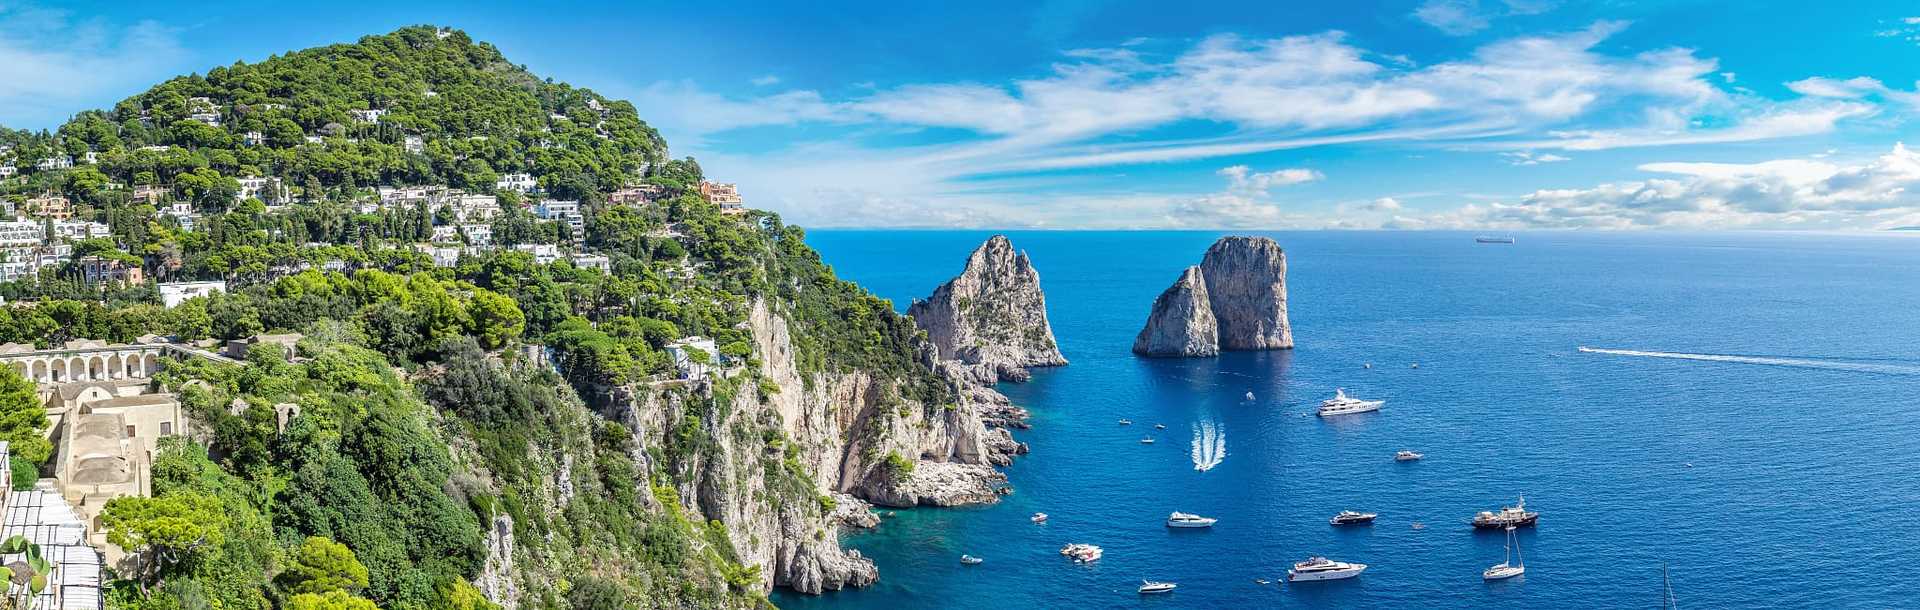 Yachts around Capri island in Italy